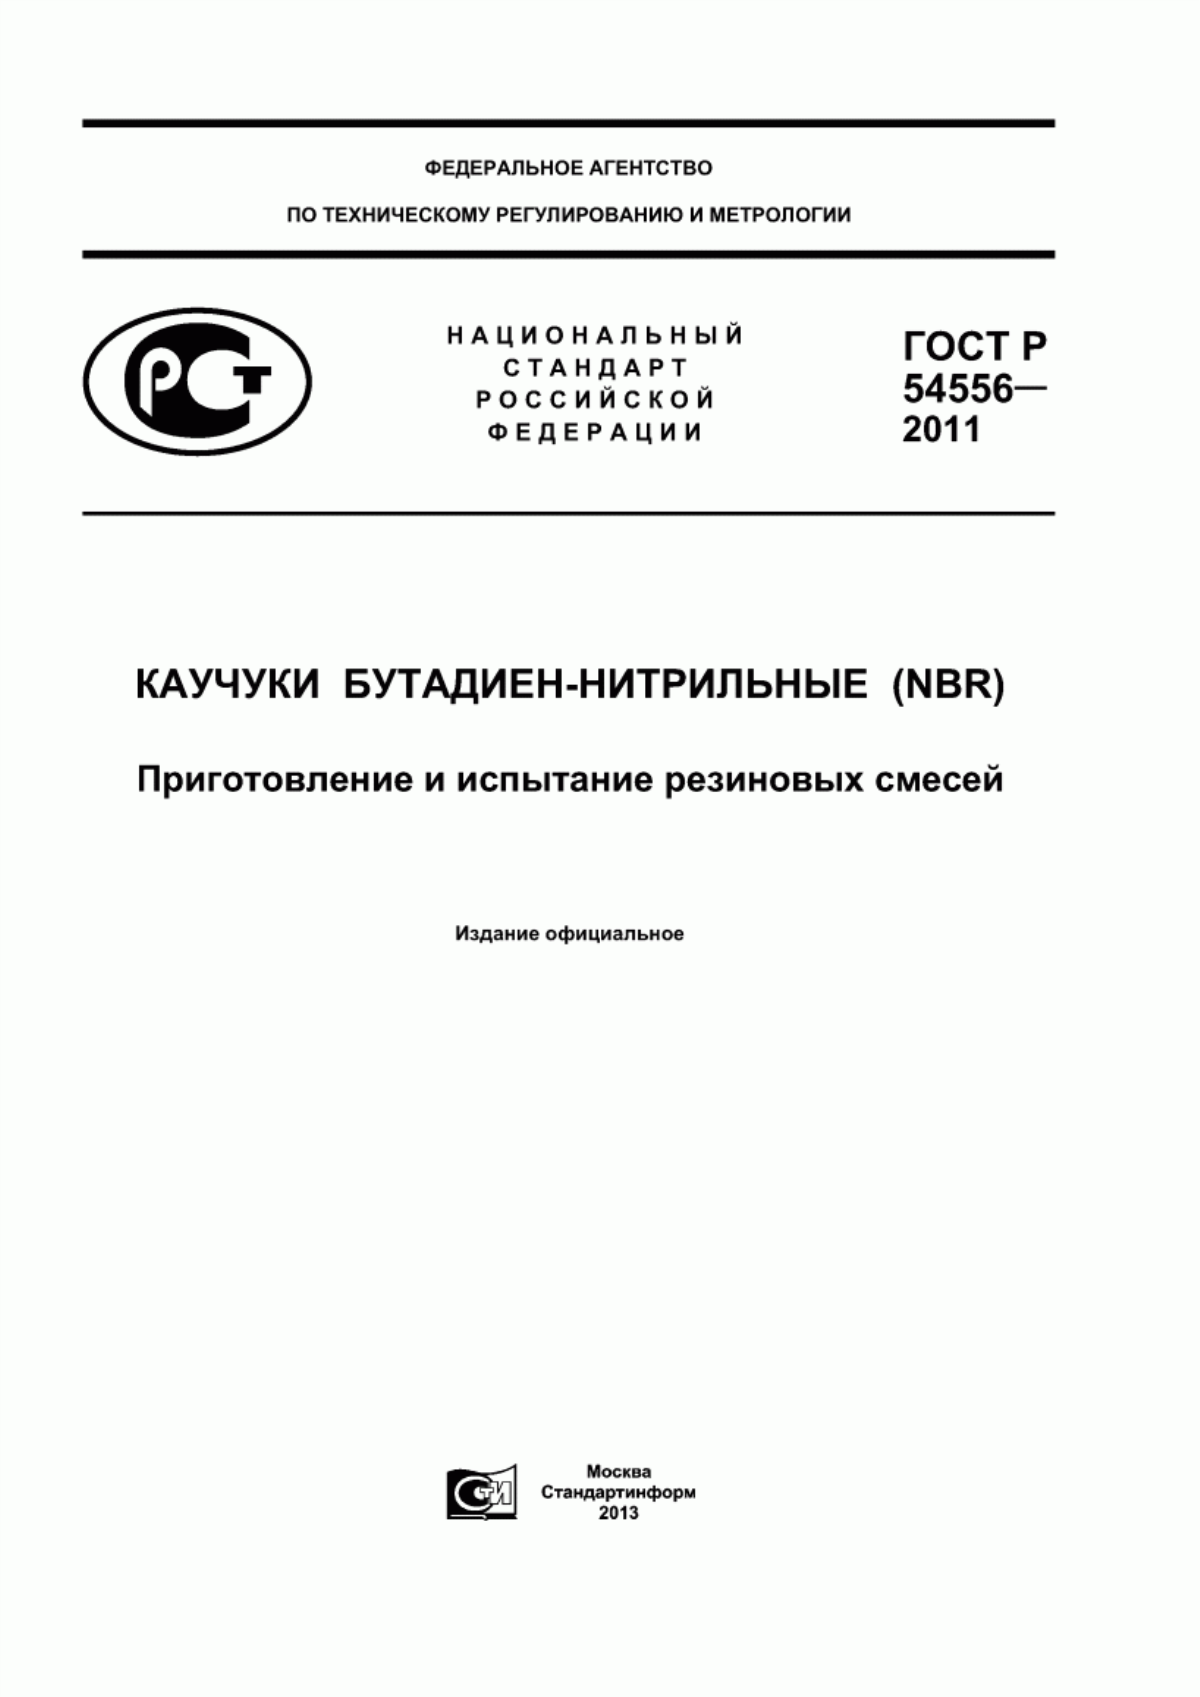 ГОСТ Р 54556-2011 Каучуки бутадиен-нитрильные (NBR). Приготовление и испытание резиновых смесей